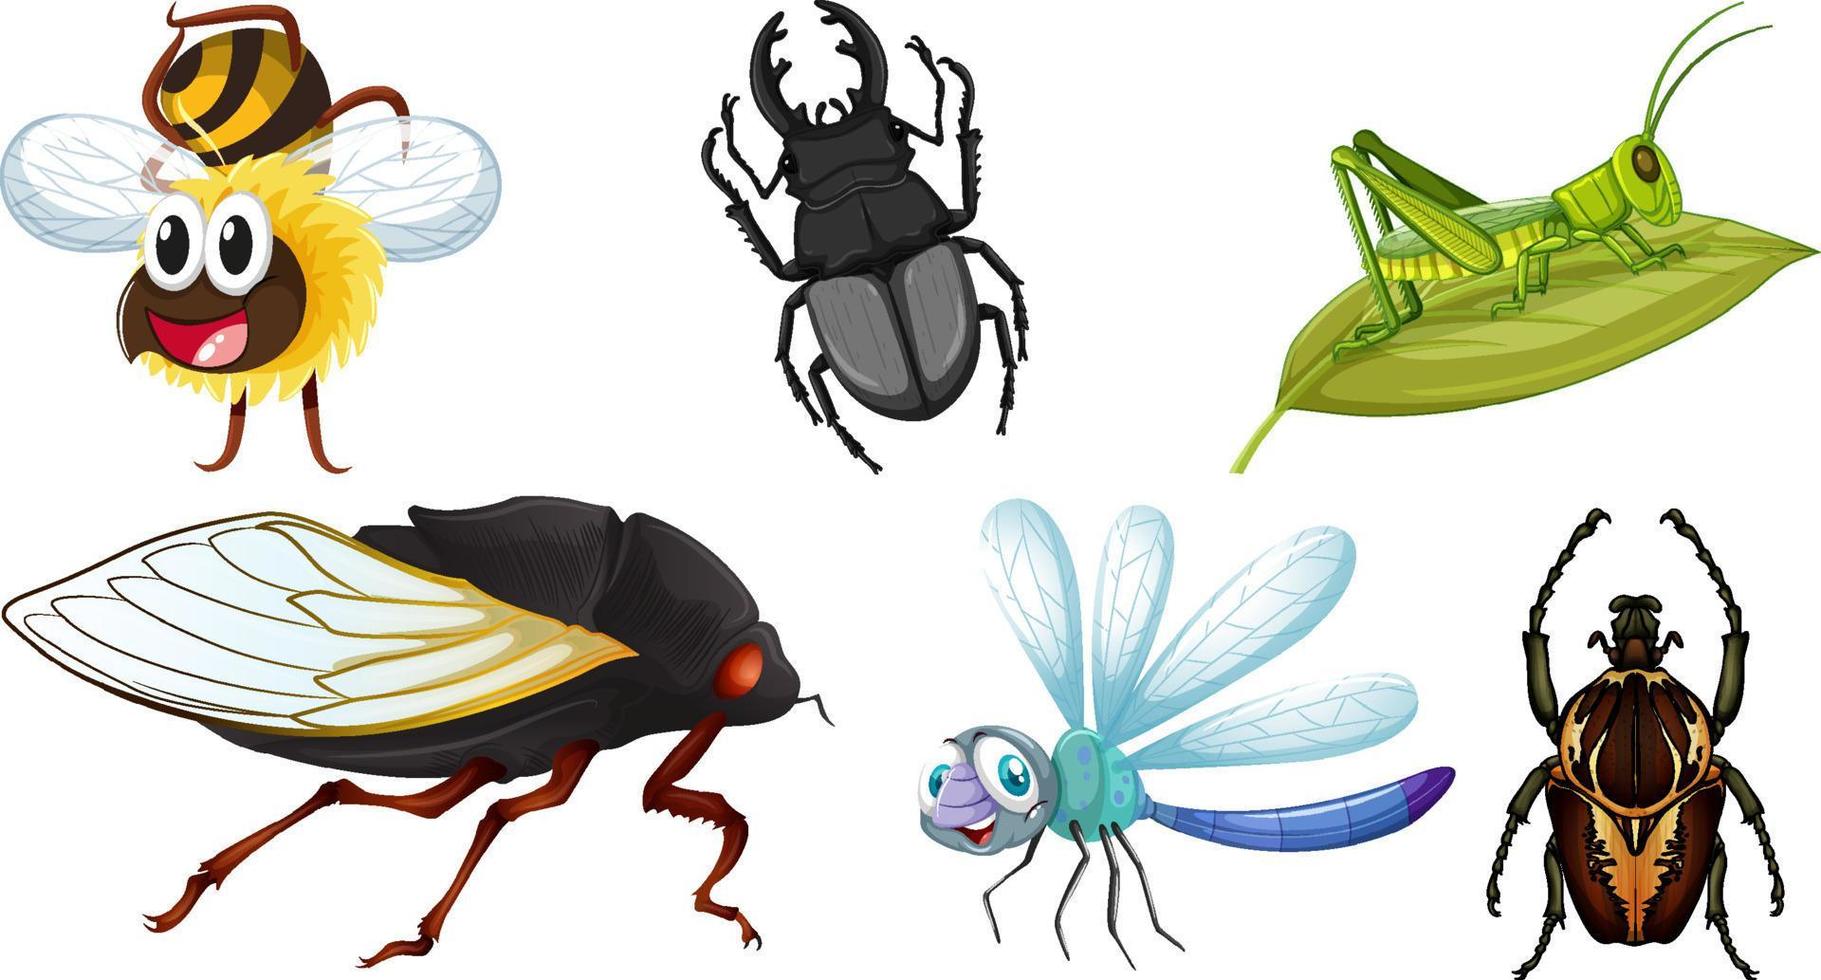 ensemble de différents types d'insectes vecteur